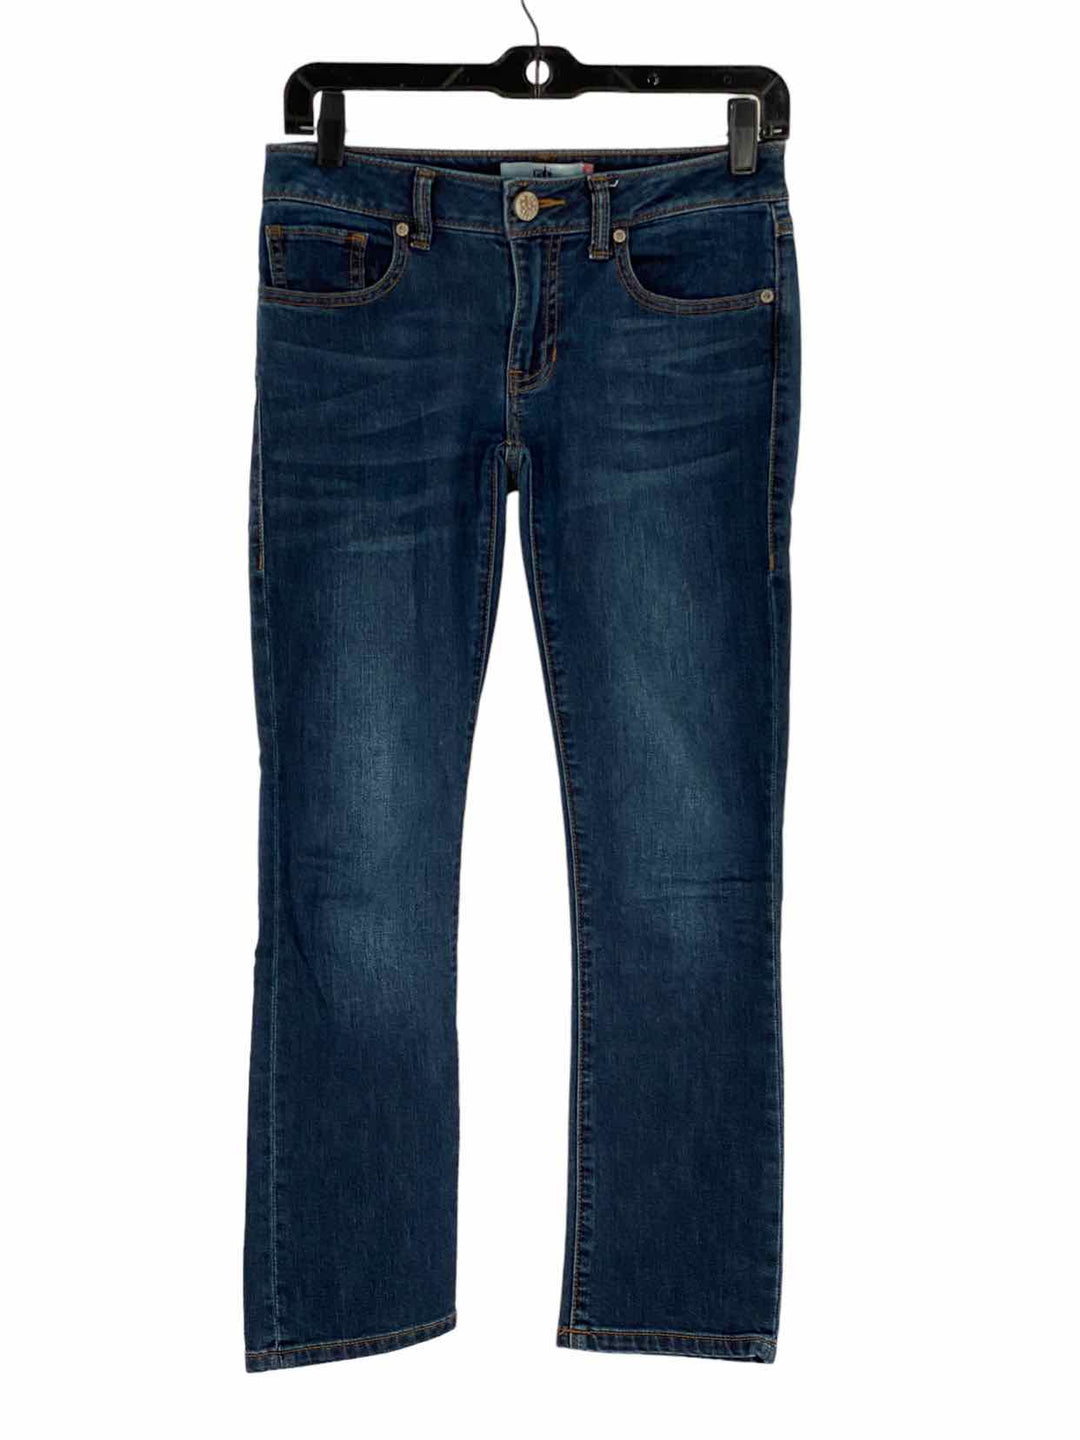 Cabi Size 25 Dark Wash Jeans